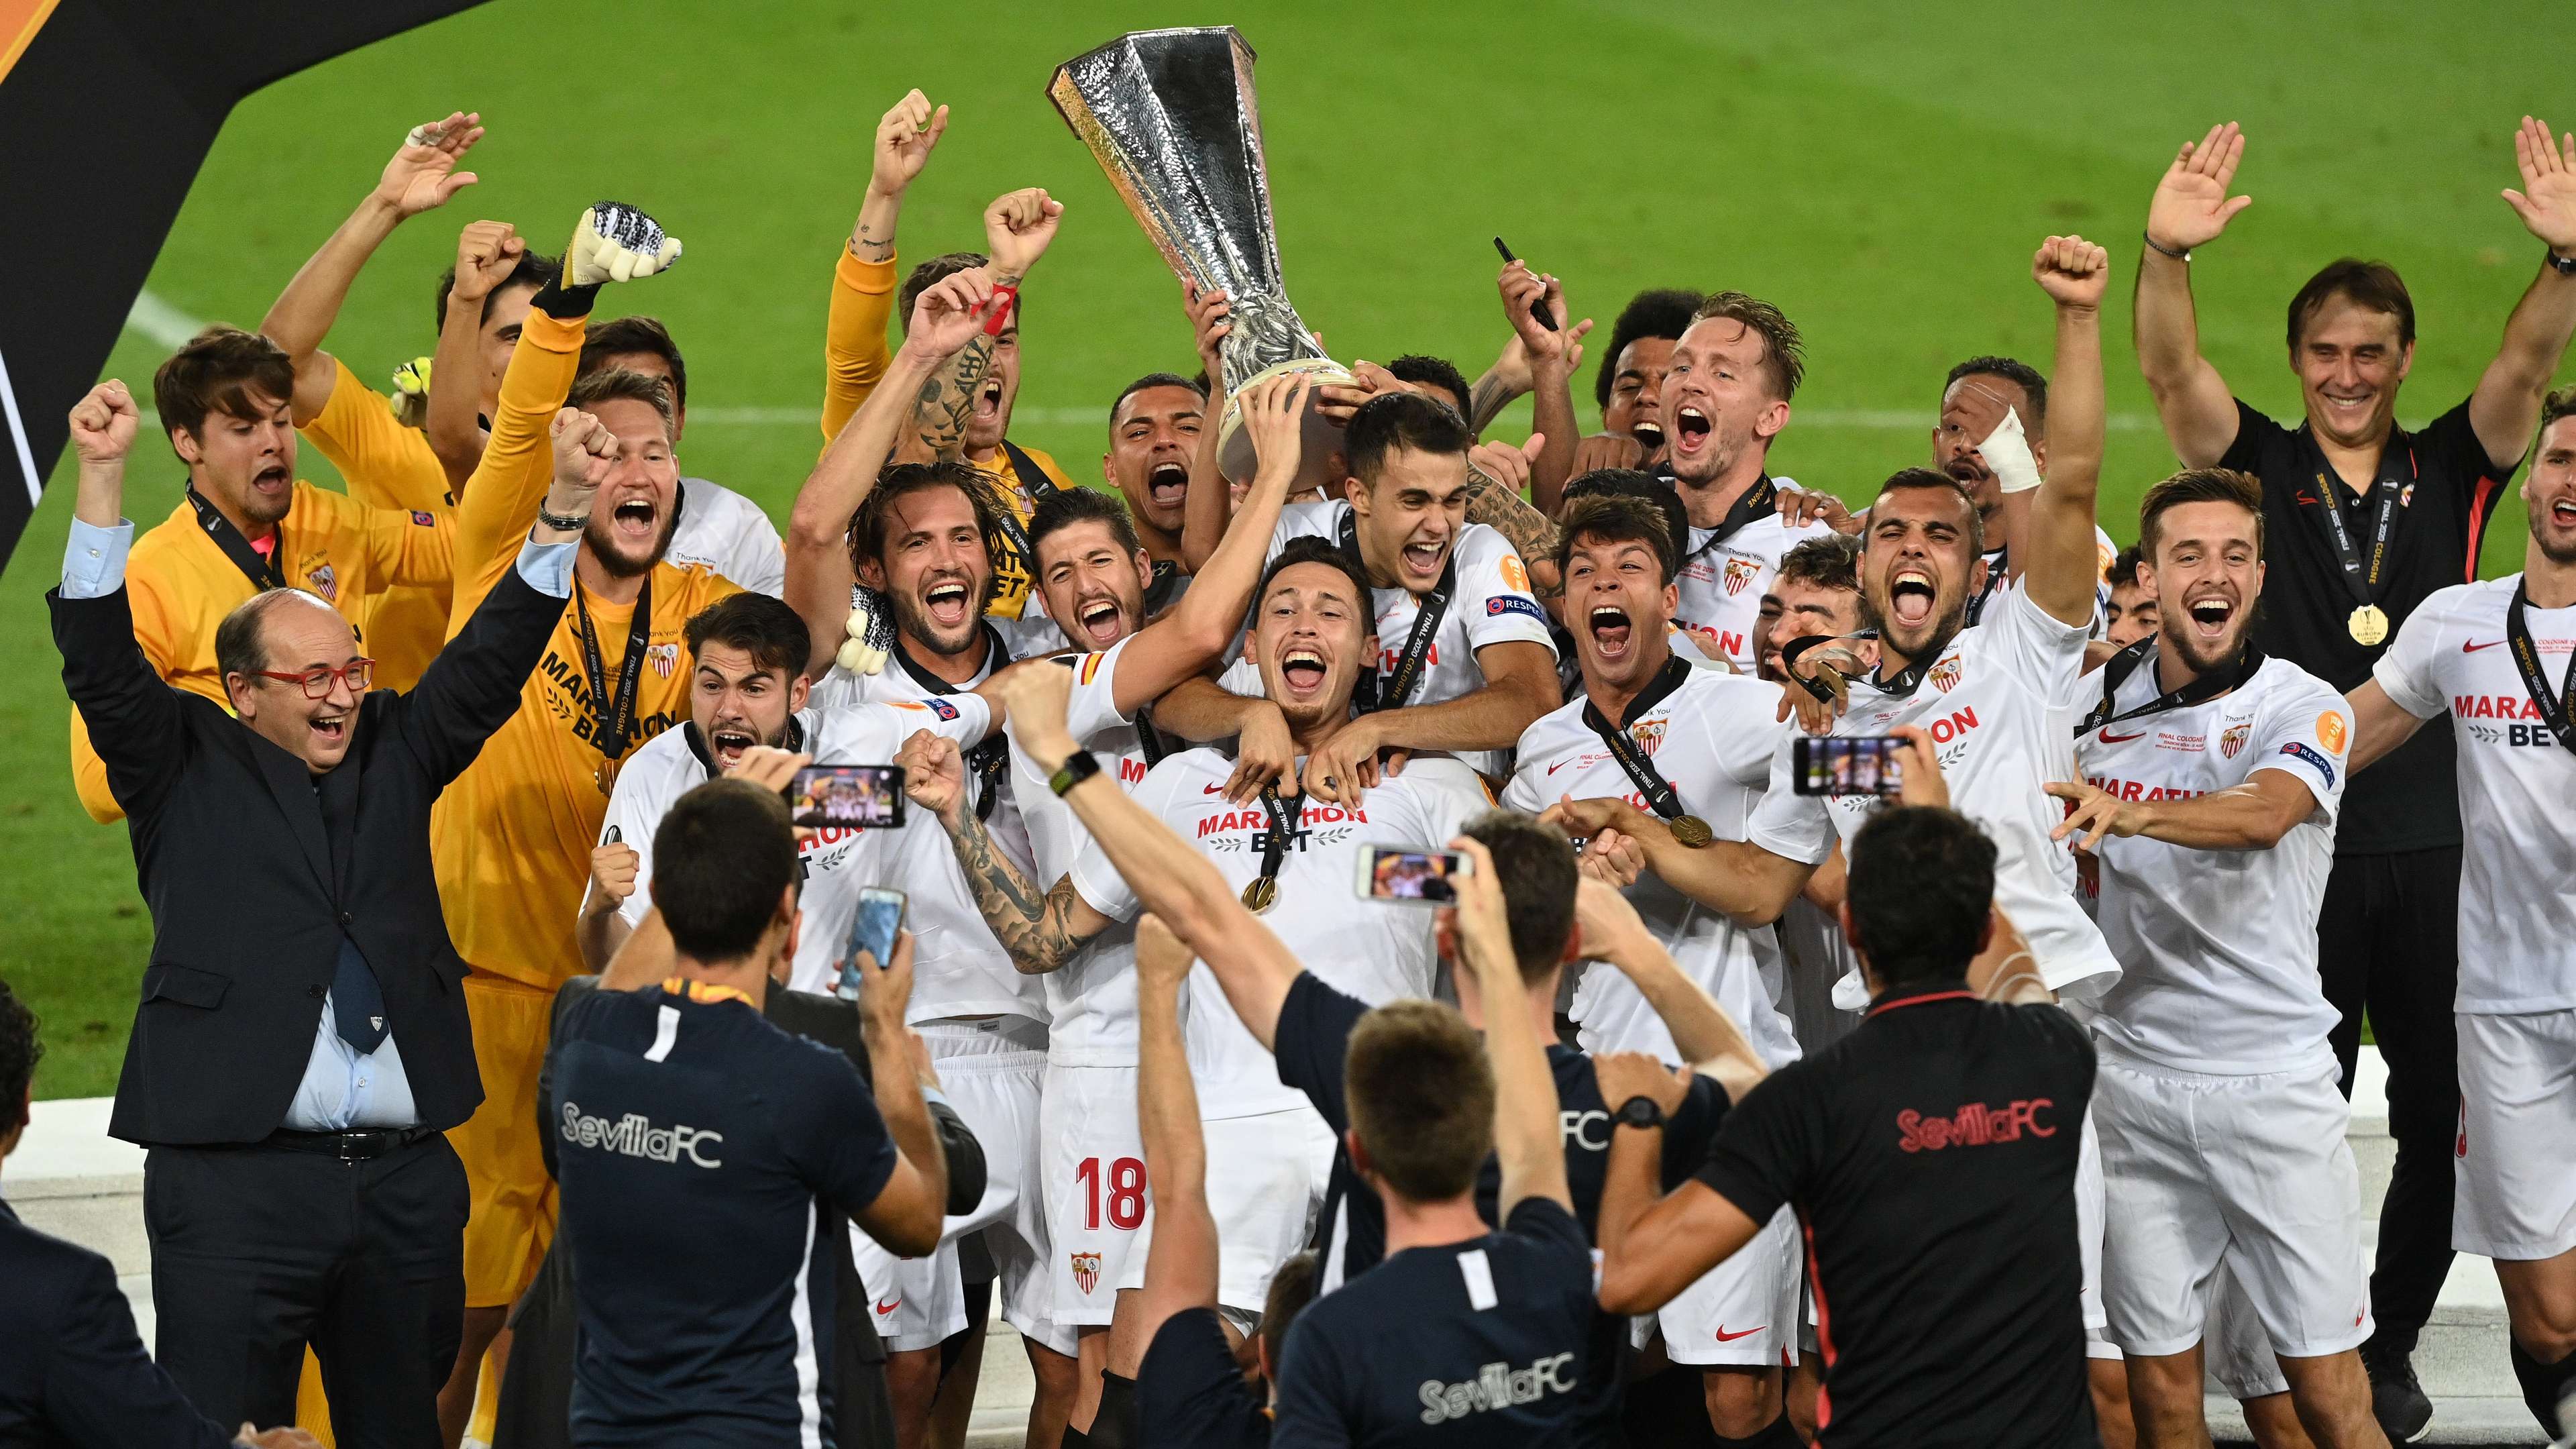 Sevilla Europa League Winners 2020